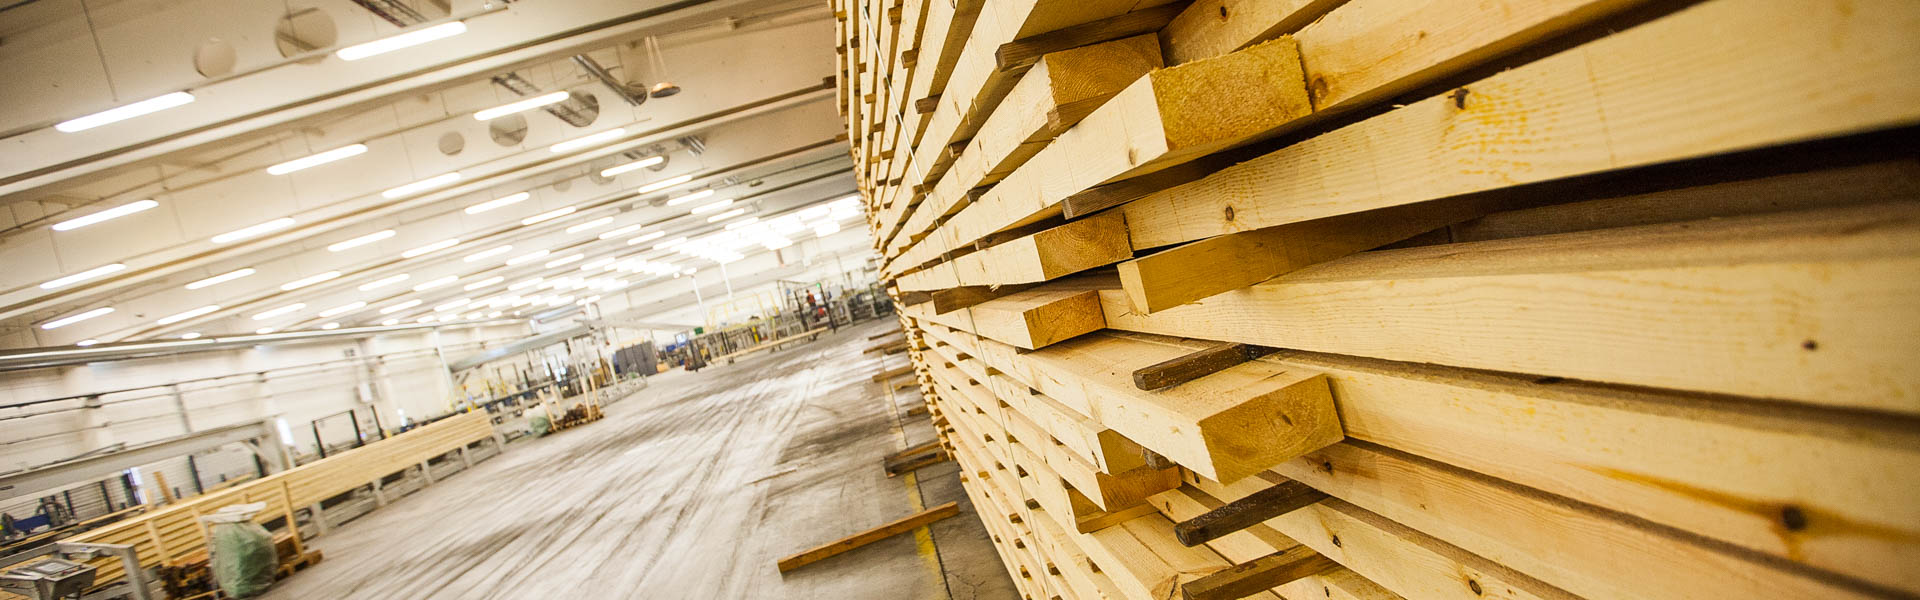 Kennzeichnend für die Holzhäuser nach finnischer Technologie sind die hochwertigen Materialien und die einzigartige Technologie zum Trocknen und Bearbeiten des Holzes, die es zulässt, die Standfestigkeit eines Holzhauses von Rovaniemi gegenüber den Witterungen und seine Langlebigkeit sicherzustellen.